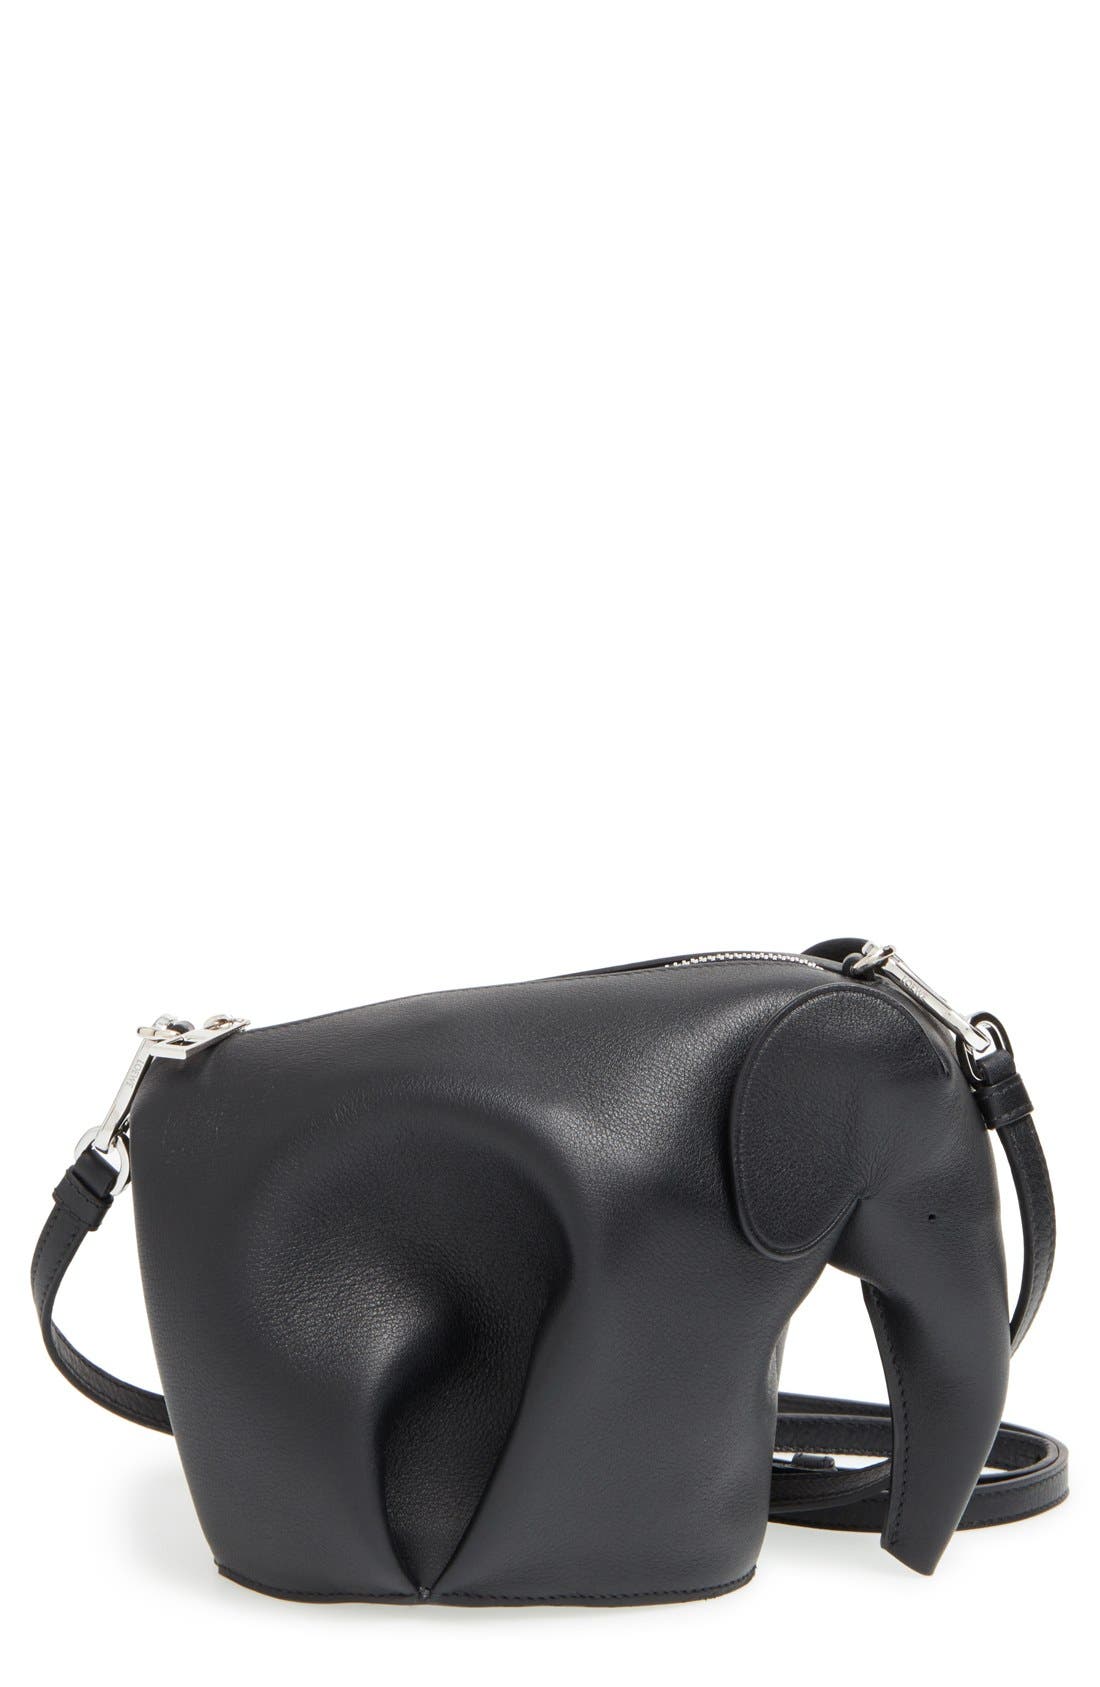 elephant loewe bag